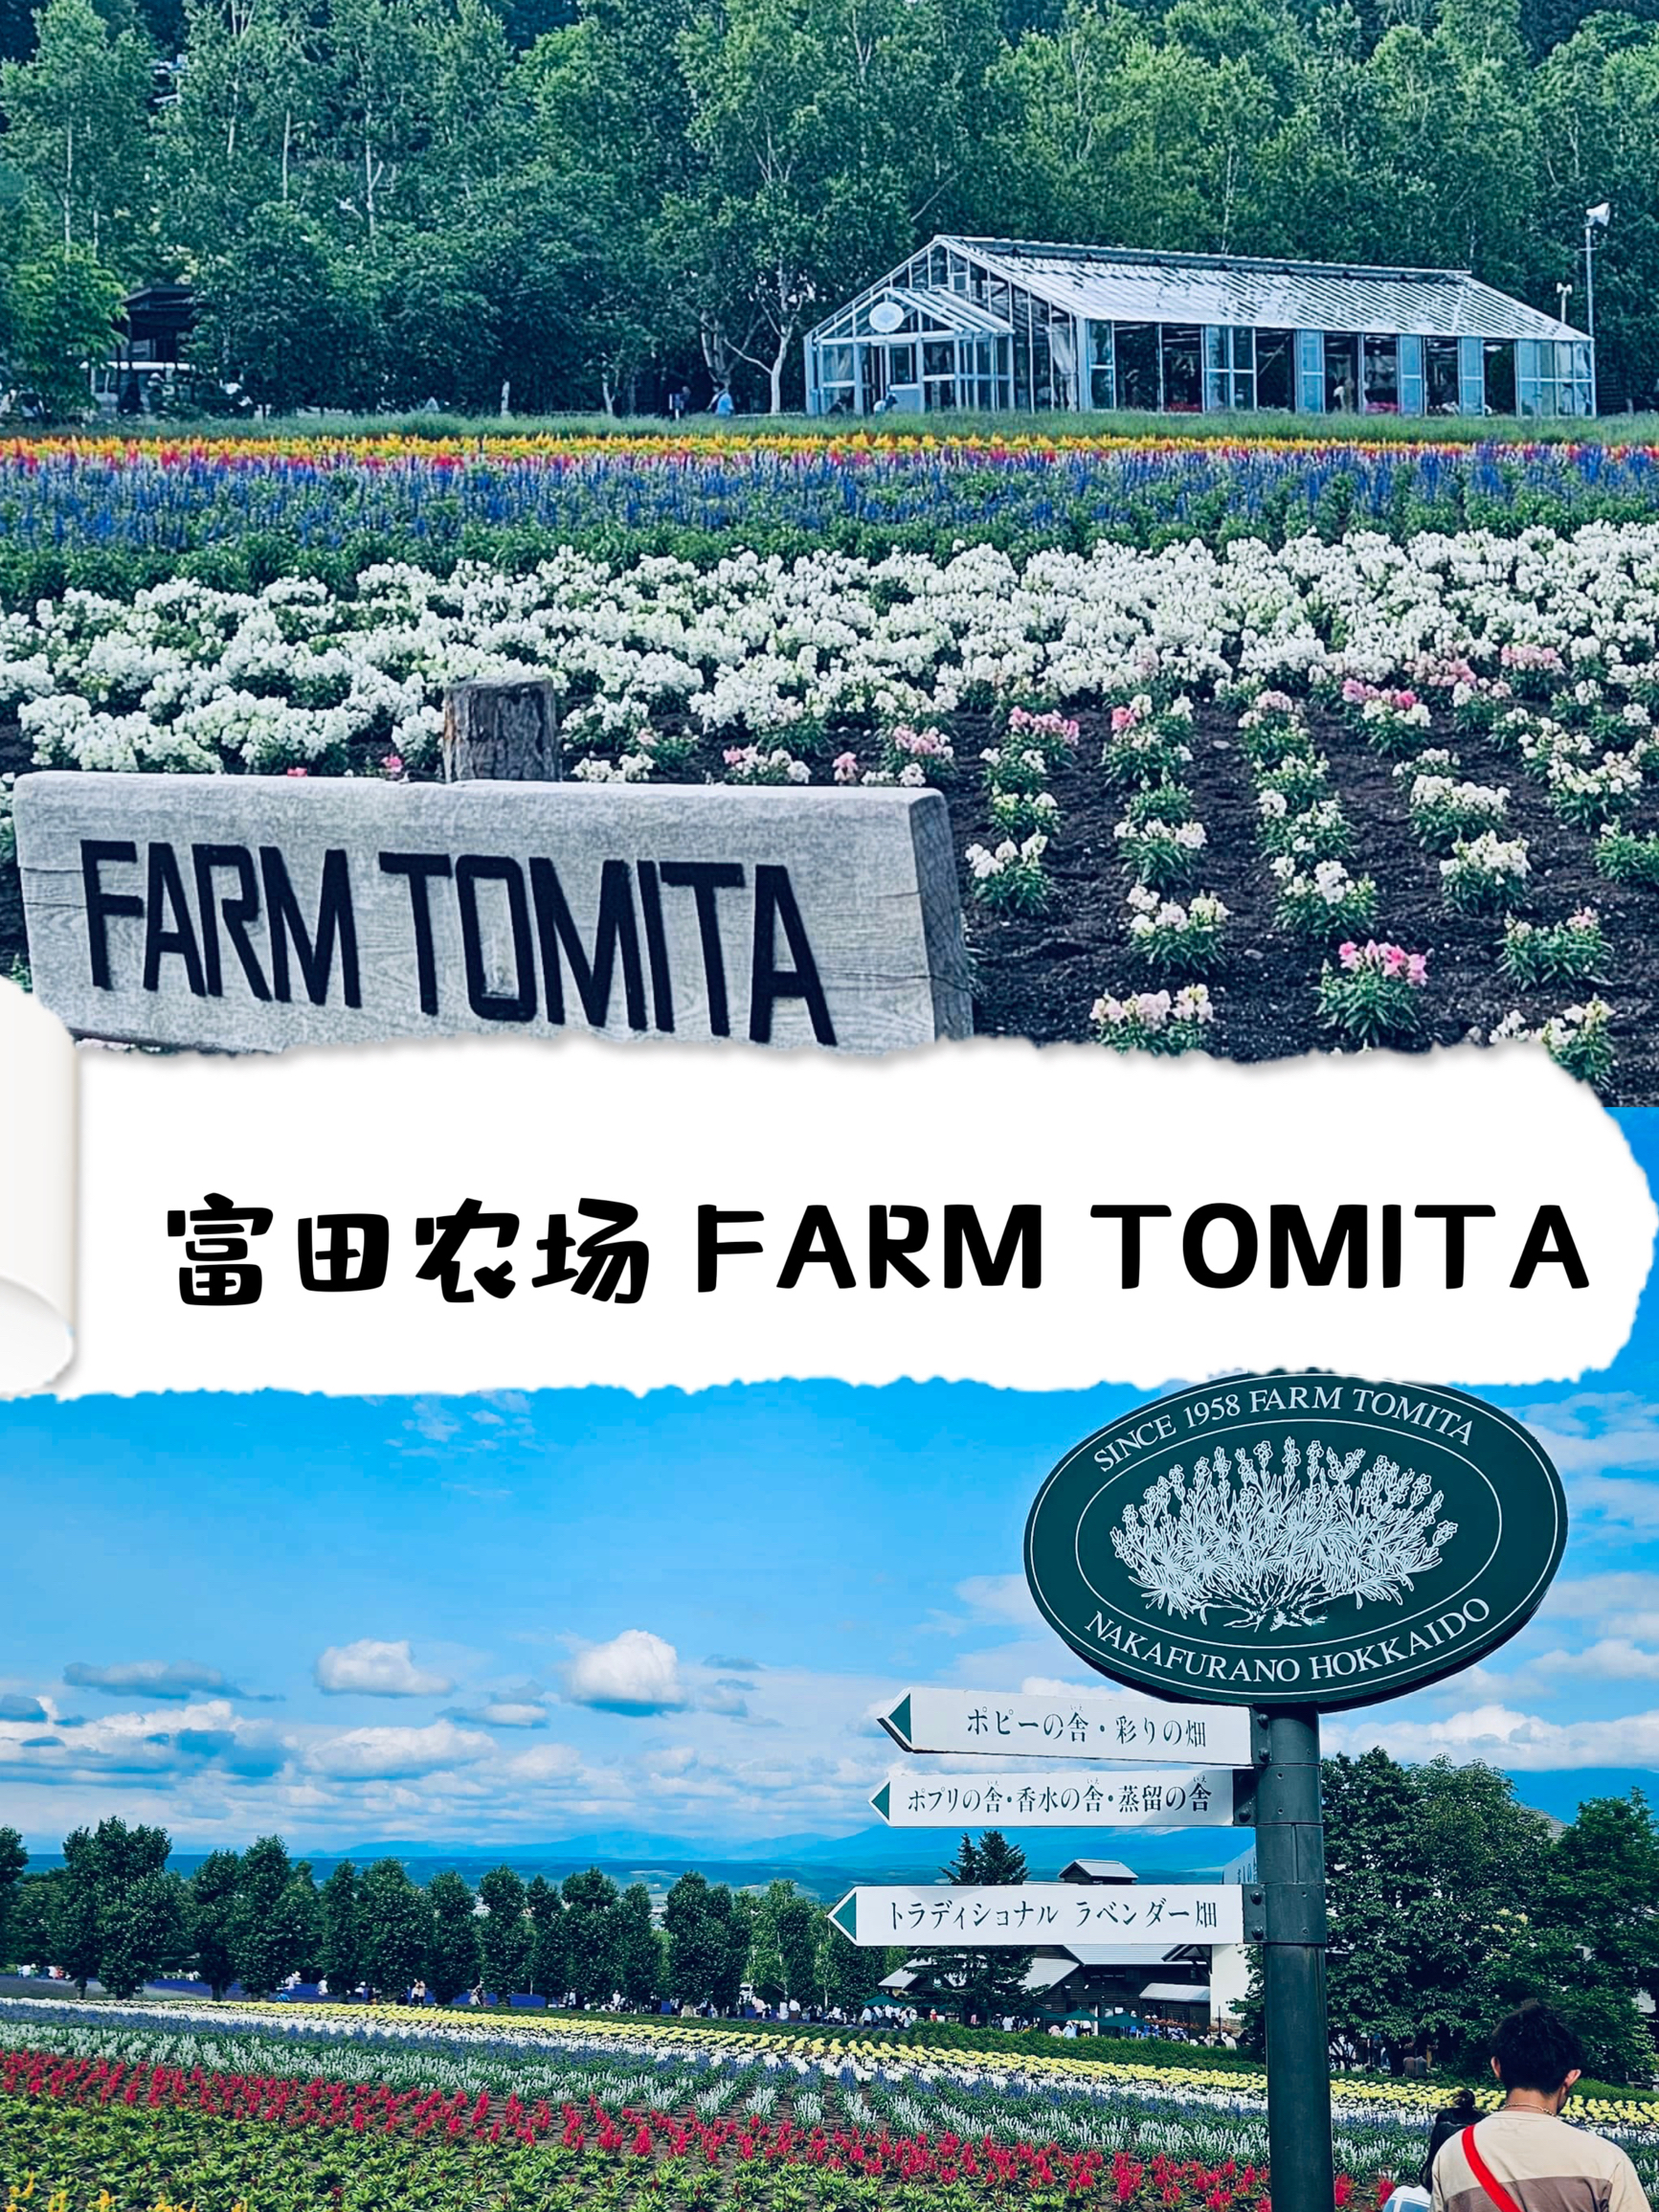 【浪漫】浪漫多汁的富田农场来一场身心愉悦的农场主之旅